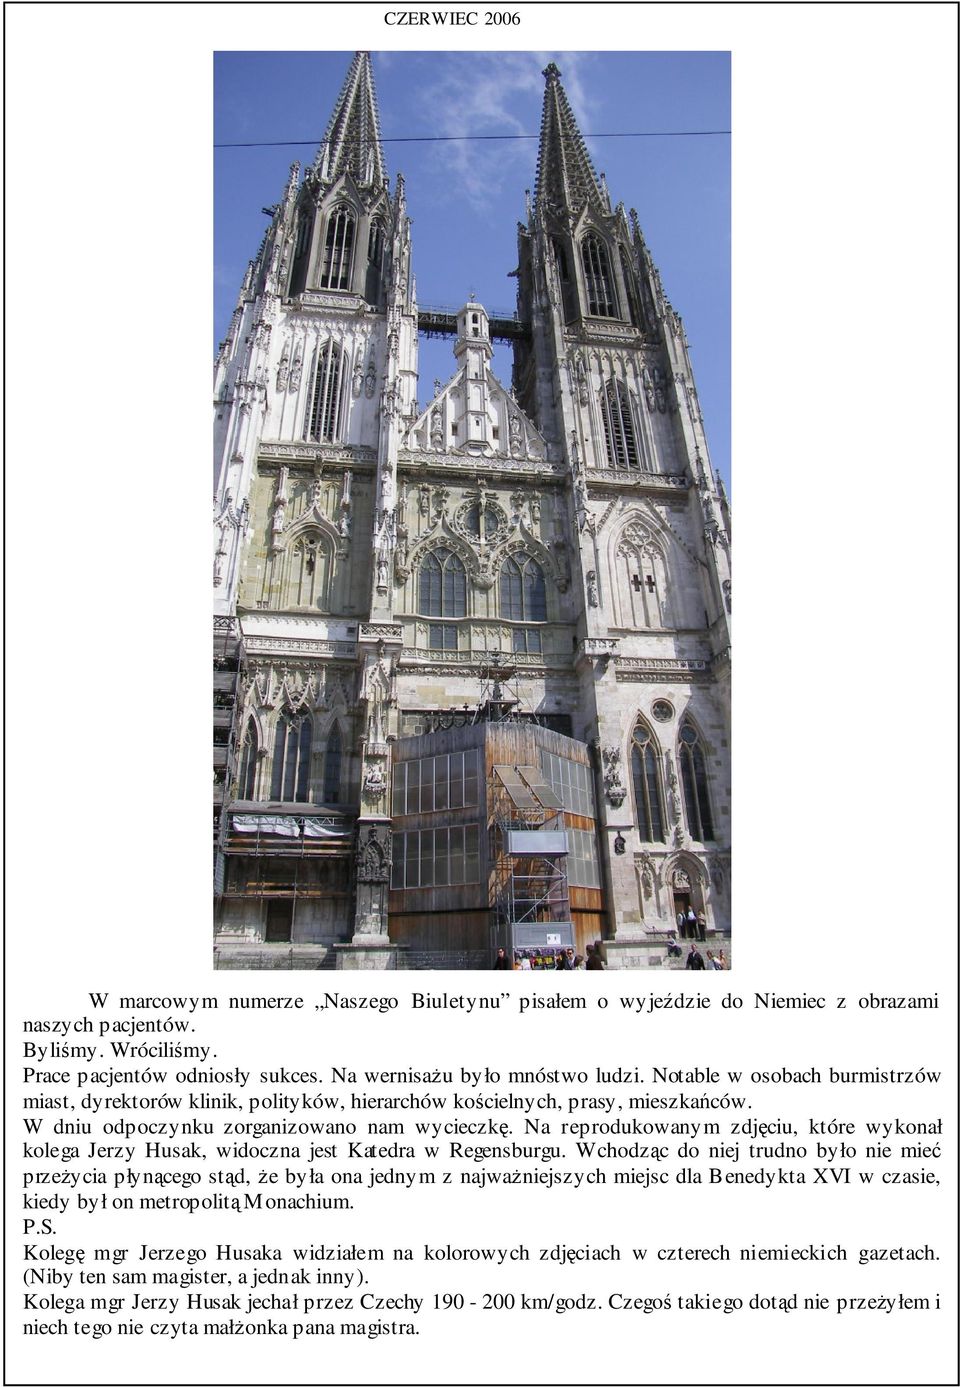 Na reprodukowanym zdjęciu, które wykonał kolega Jerzy Husak, widoczna jest Katedra w Regensburgu.